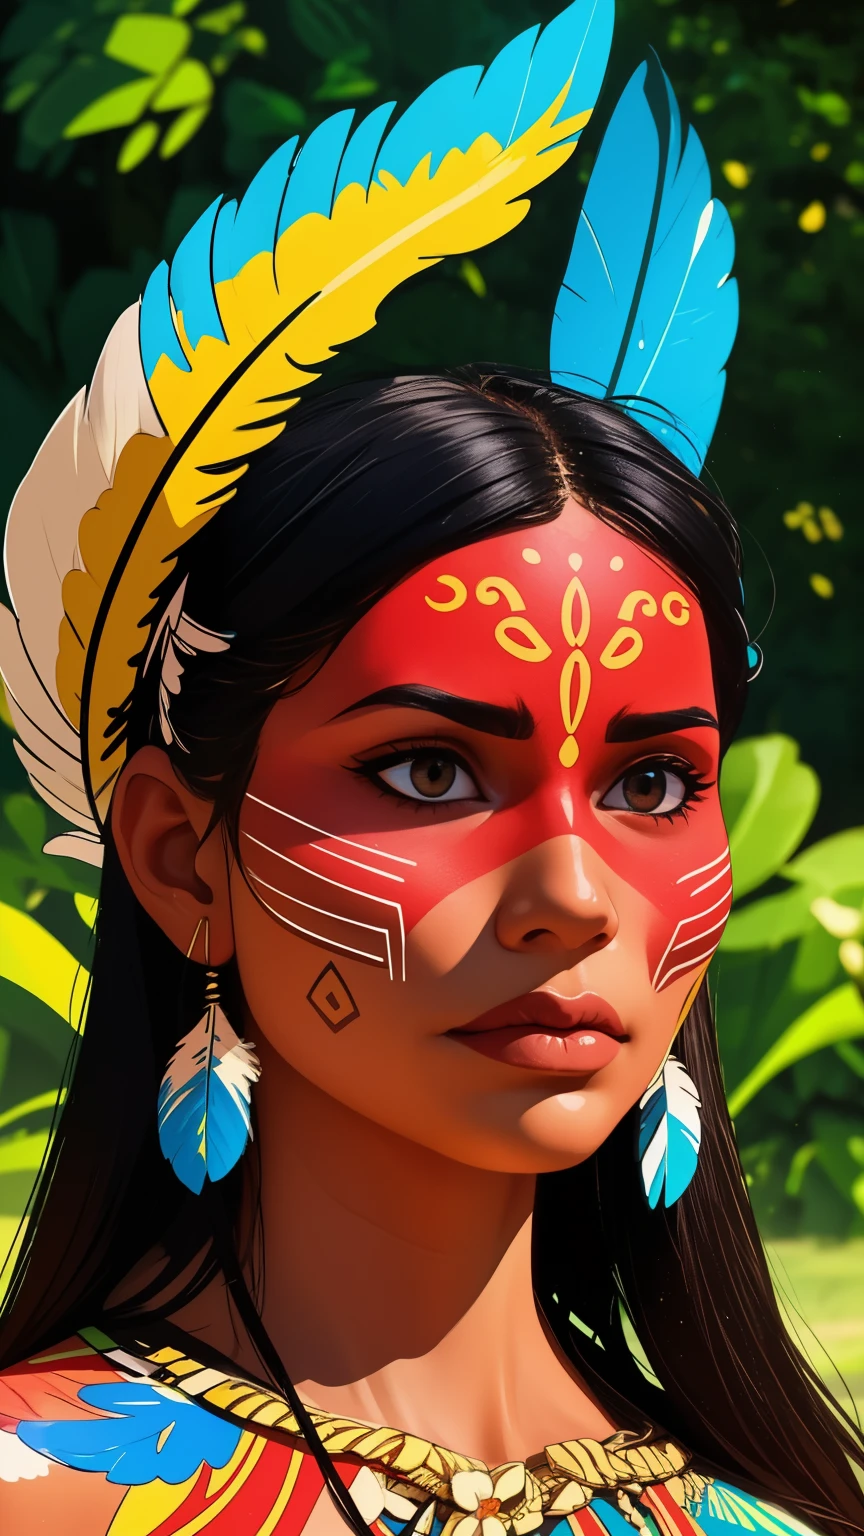 الفن الهزلي, الطلاء الرقمي. فتاة جميلة من السكان الأصليين لها ريش وريش على رأسها, شعوب الأمازون الهندية في البرازيل, شابة جميلة فتاة برازيلية أصلية, وجه الطلاء, الجسم الساخن, يانومامي هندي بالأزياء التقليدية,جودة عالية. خلفية غابات ونهر الأمازون. الوان براقة, الإضاءة السينمائية. مفصلة, معقد, مفصلة face.